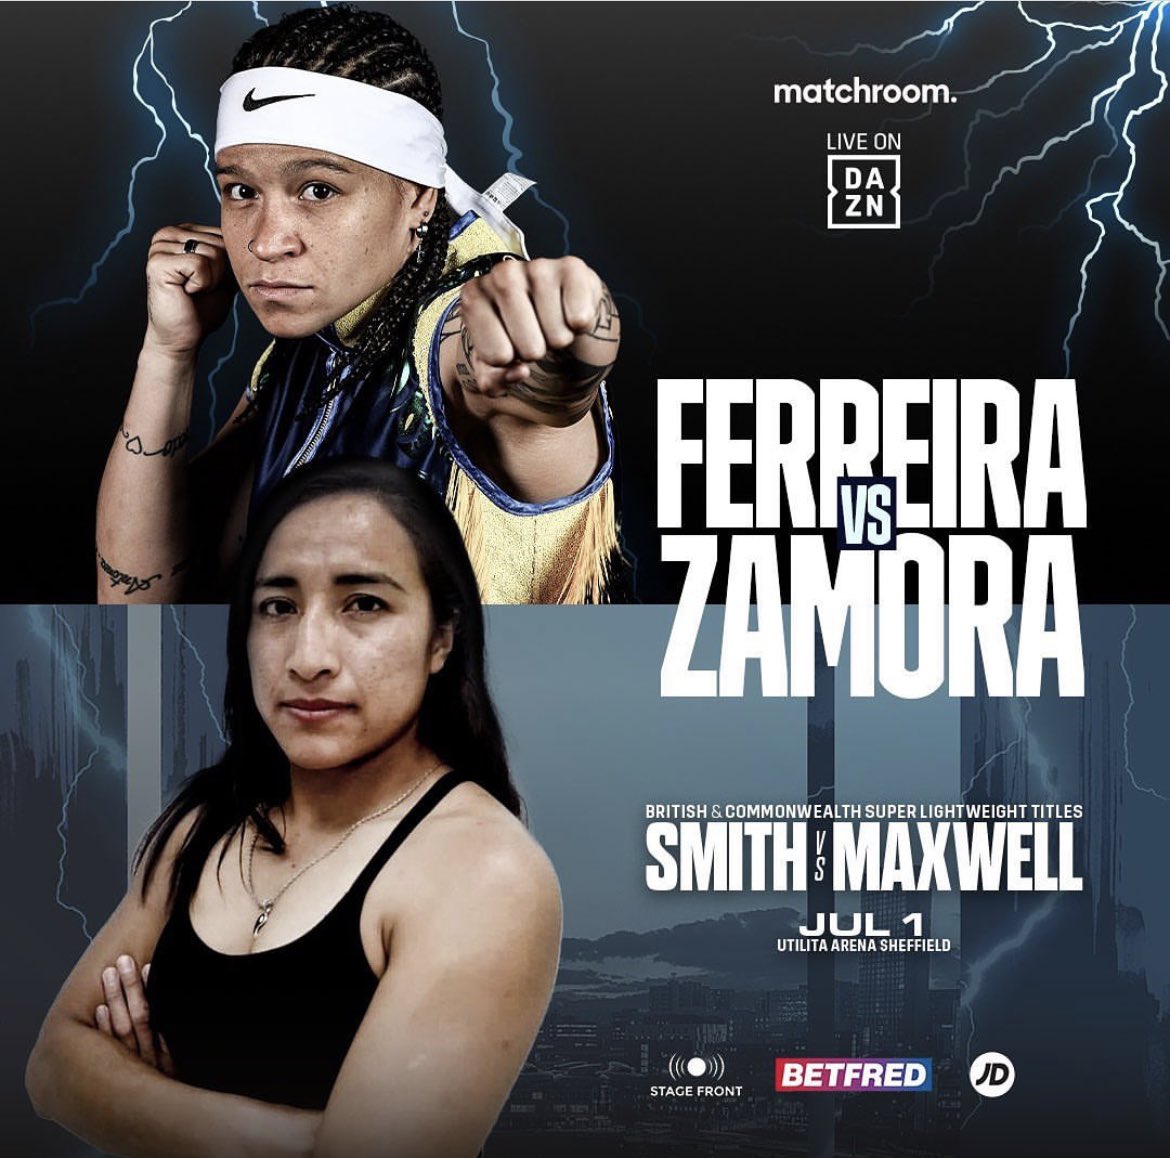 #FightWeek
Brazil’s @BFerreira60kg (2-0, 1KO) vs Mexico’s Karla Ramos Zamora (10-9-1, 3KOs) in a super feather 8 rounder Saturday live on DAZN